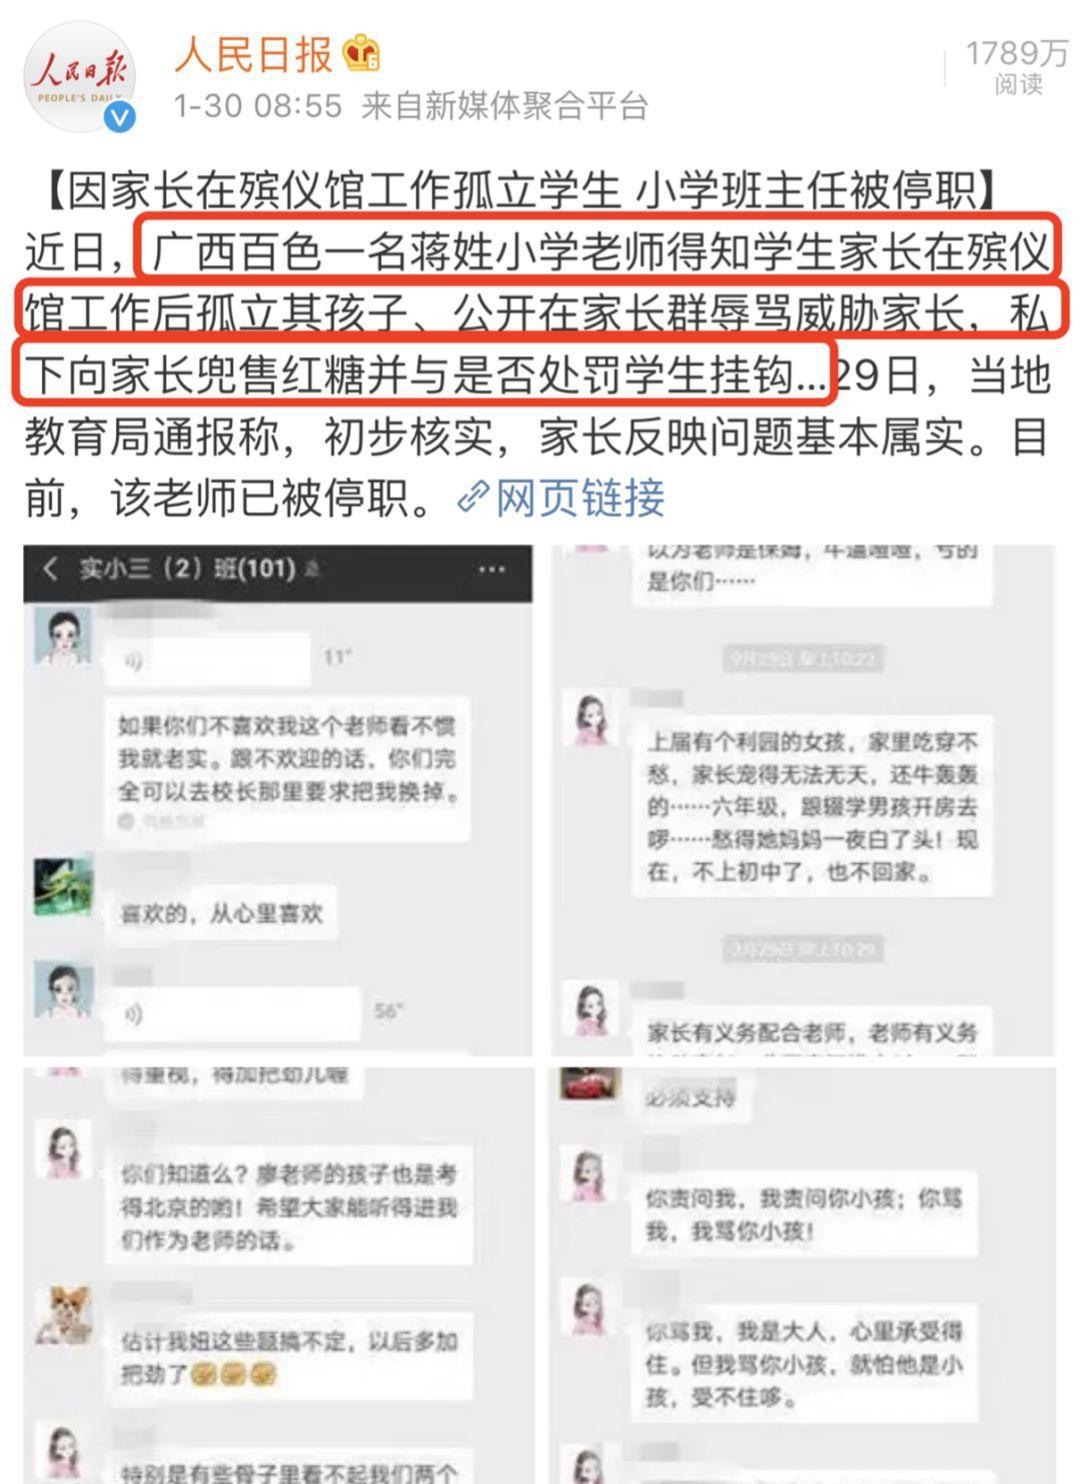 出轨16岁男生︱上海女老师被冒充 大批直播主抽水骗打赏搏流量 | 星岛日报